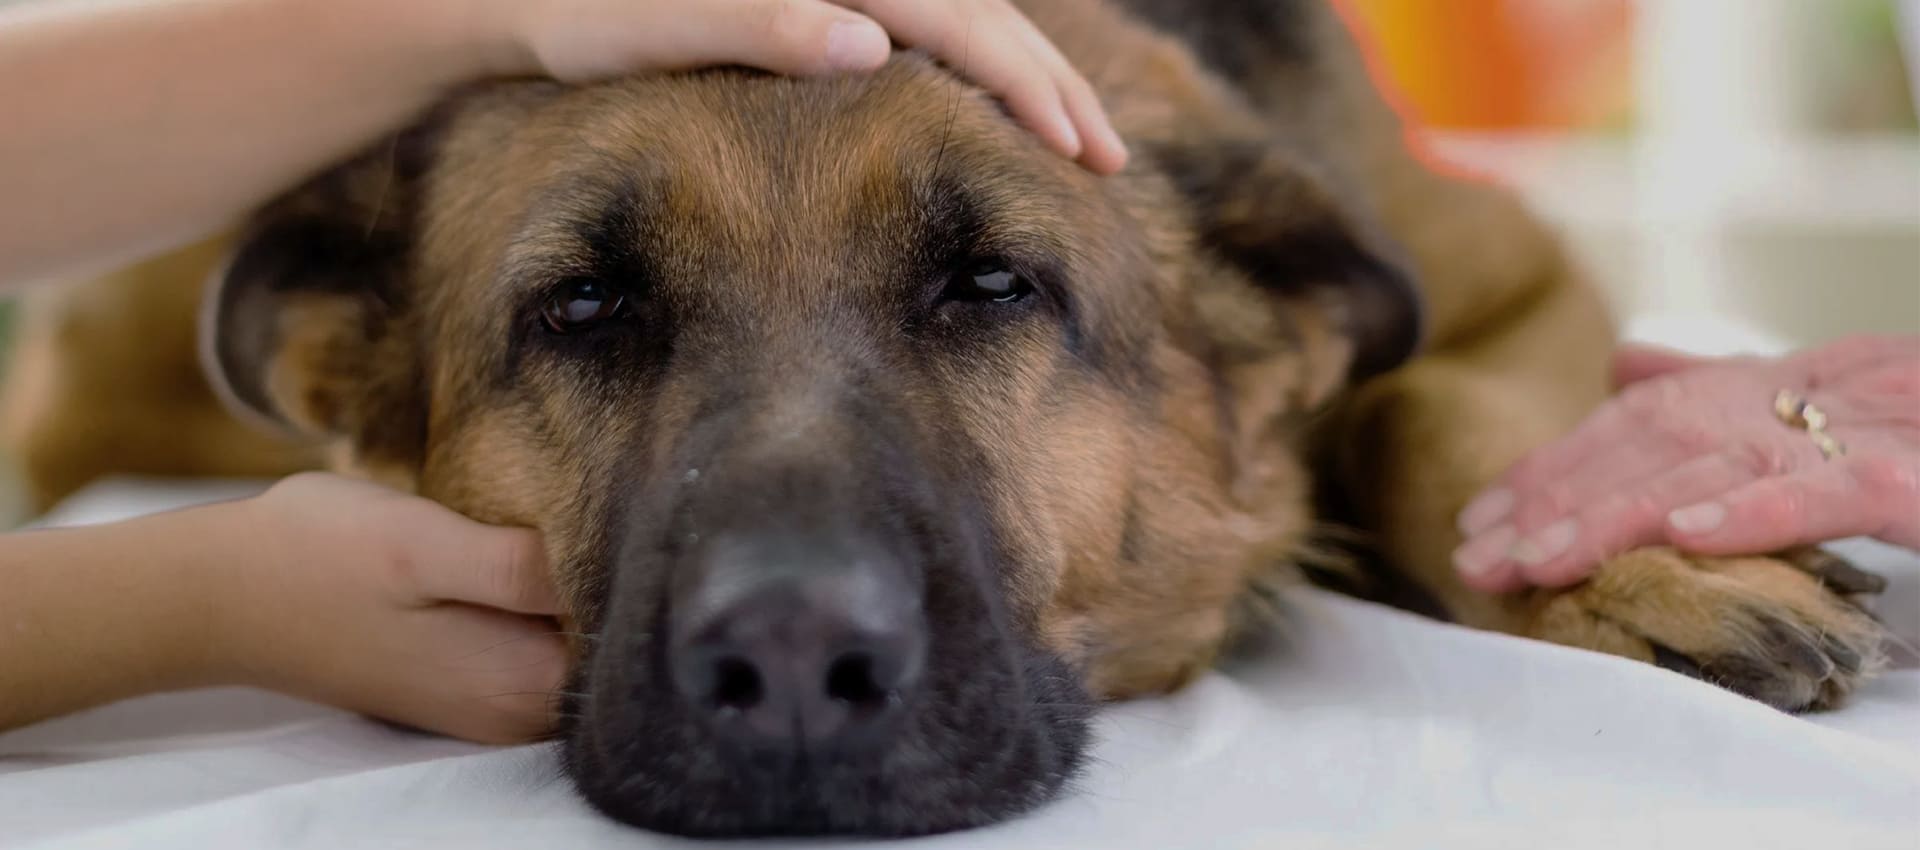 Заворот кишок у собаки – симптомы, советы ветеринаров